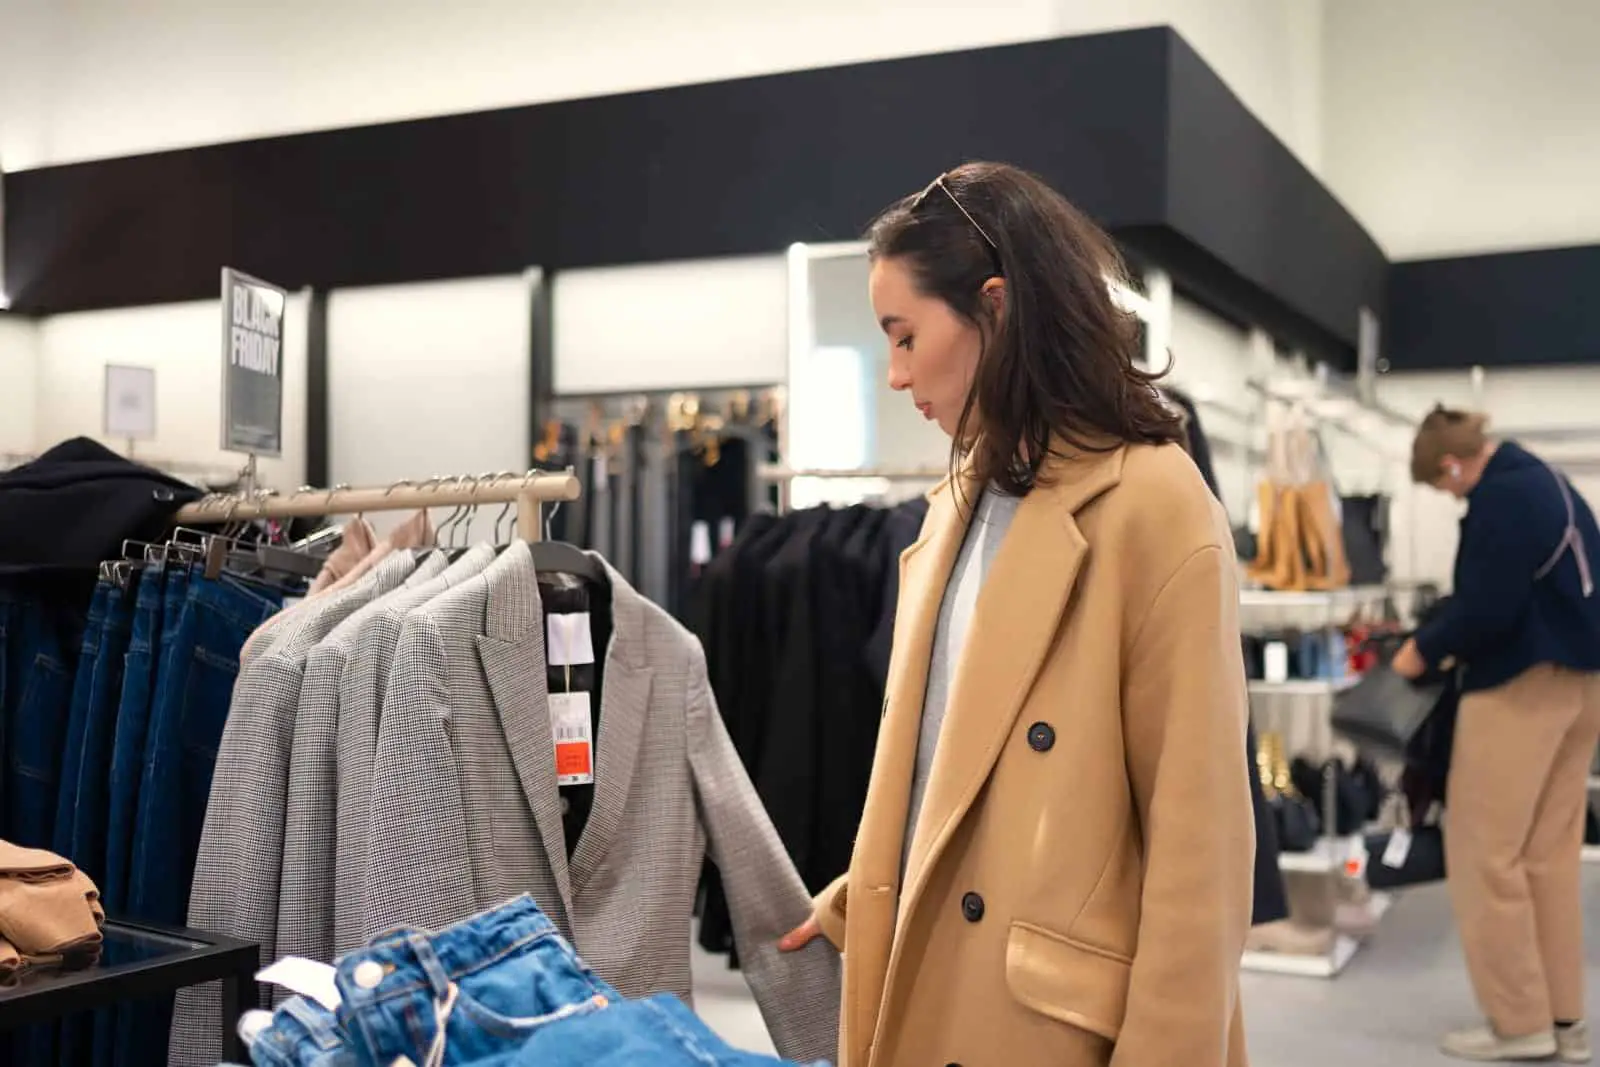 Una mujer mirando ropa en una tienda de ropa.